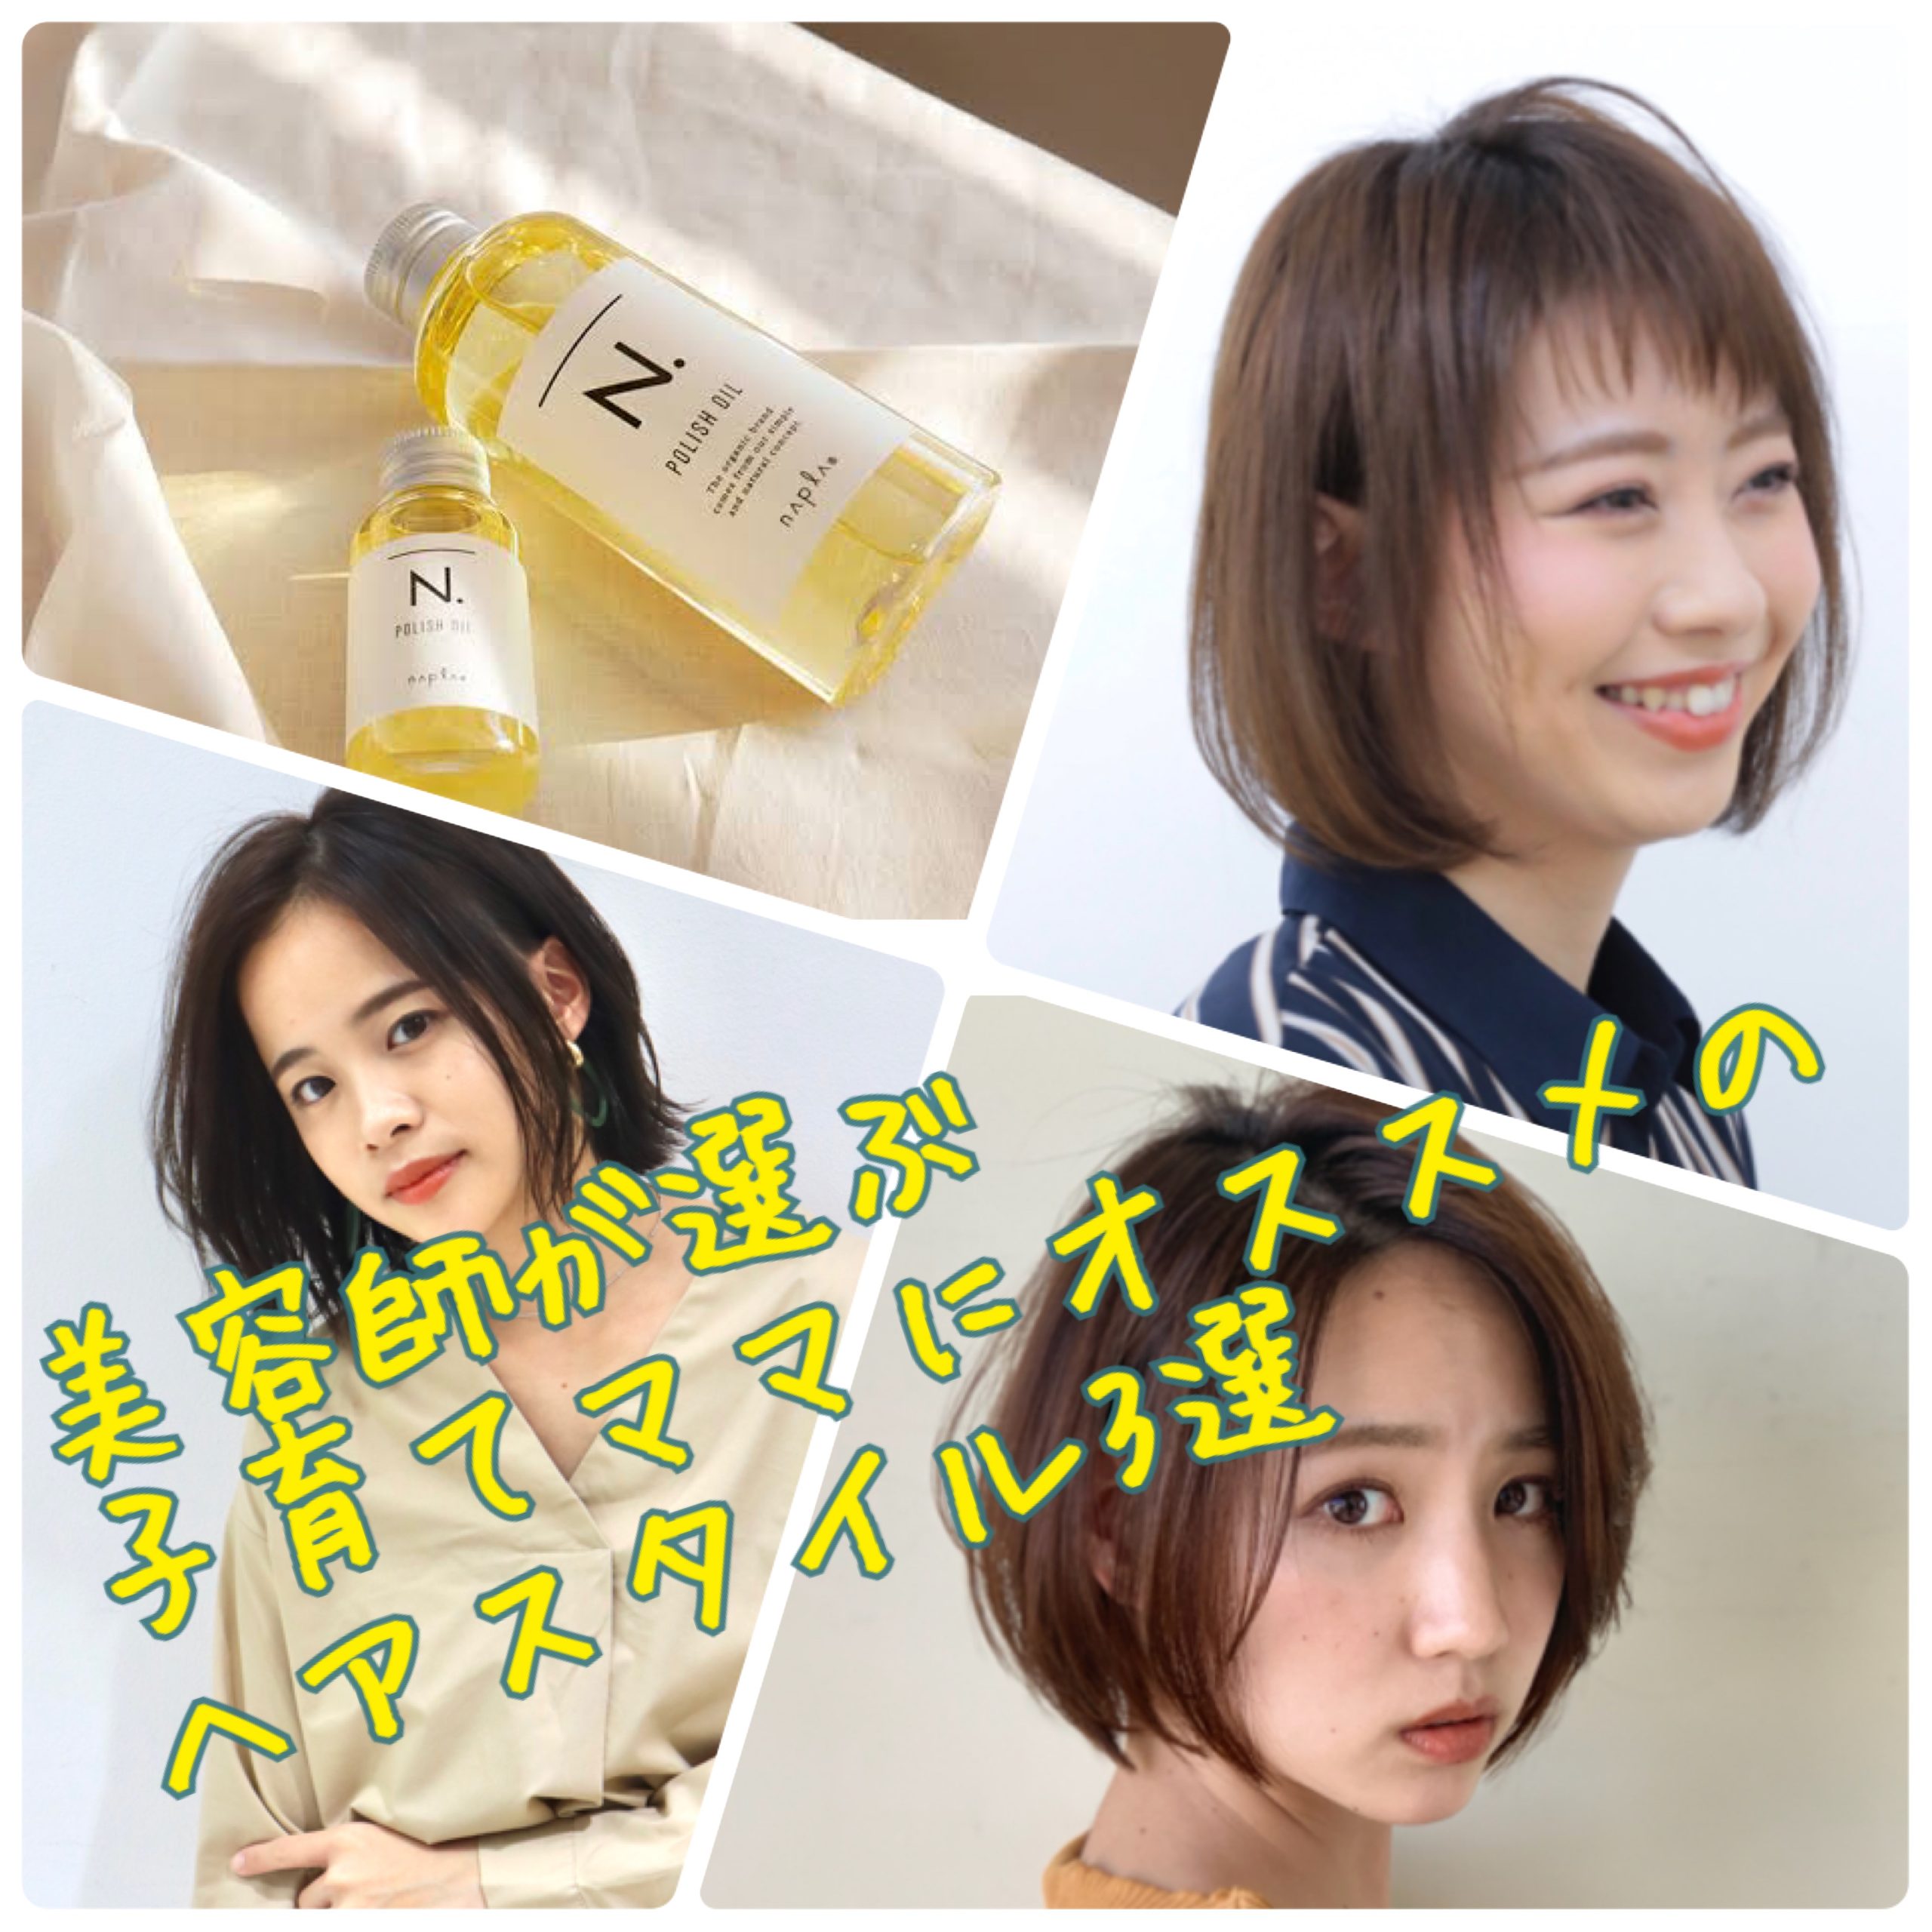 子育て中もおしゃれになれる髪型3選 奈良 京都 大阪の美容室 ハピネス